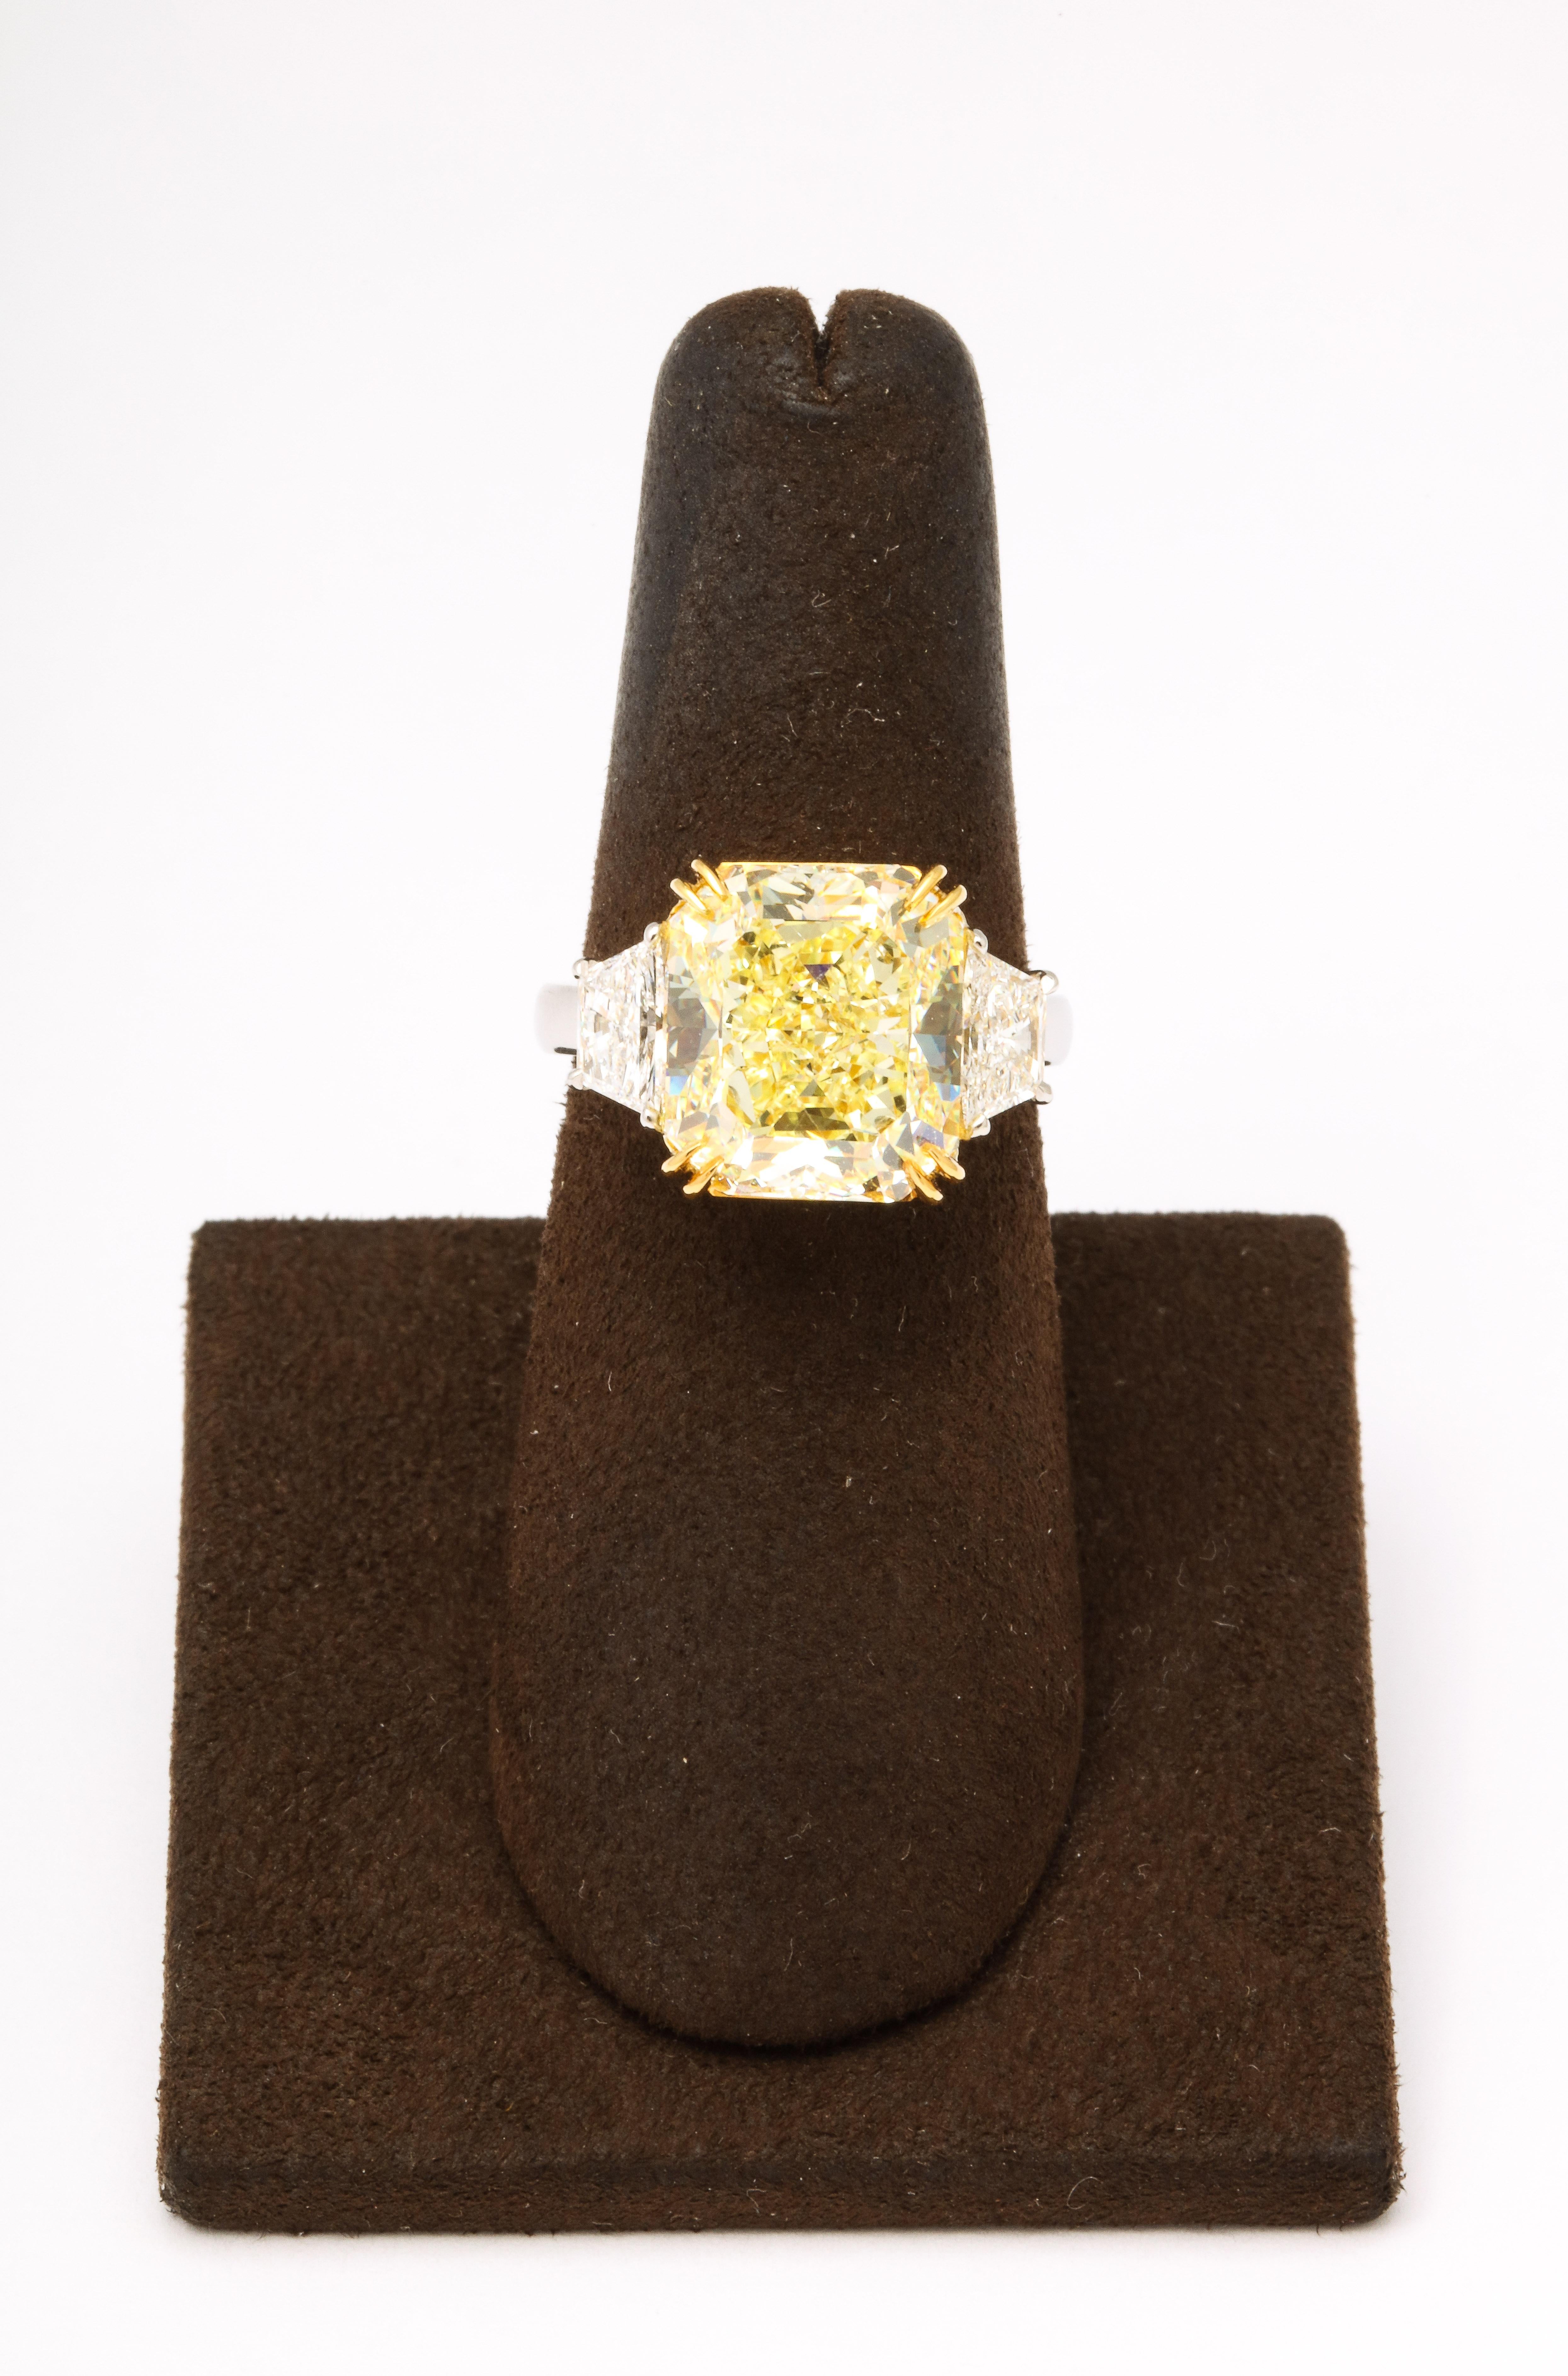 
Une bague en diamant jaune scintillante !

Diamant central jaune fantaisie de 8,22 carats de taille radiant, certifié par le GIA, SI2. 

Des diamants blancs latéraux de 0,85 carat. 

Monture personnalisée en platine et or jaune 18 carats. 

Taille